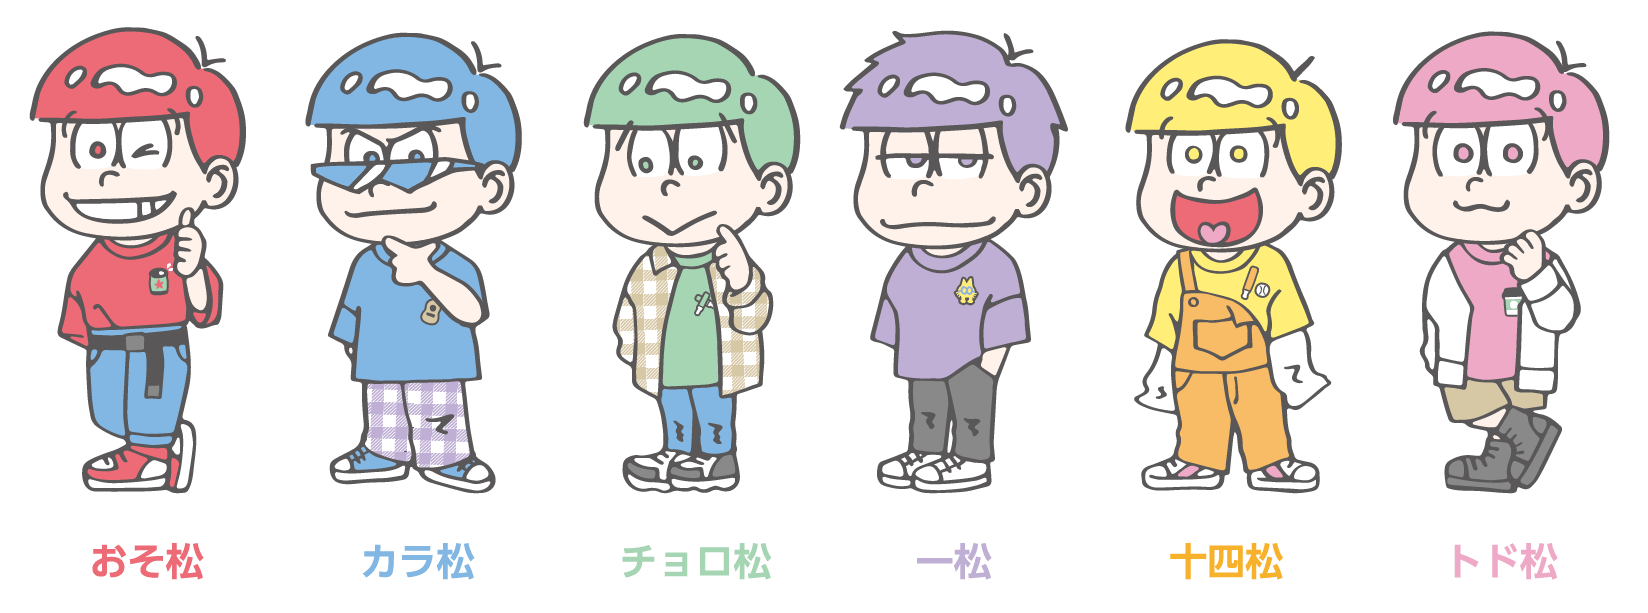 Narumiya Online ナルミヤ オンラインの公式通販サイト日本中を騒がせた大人気tvアニメ おそ松さん とラブトキシックのスペシャルコラボアイテムが発売